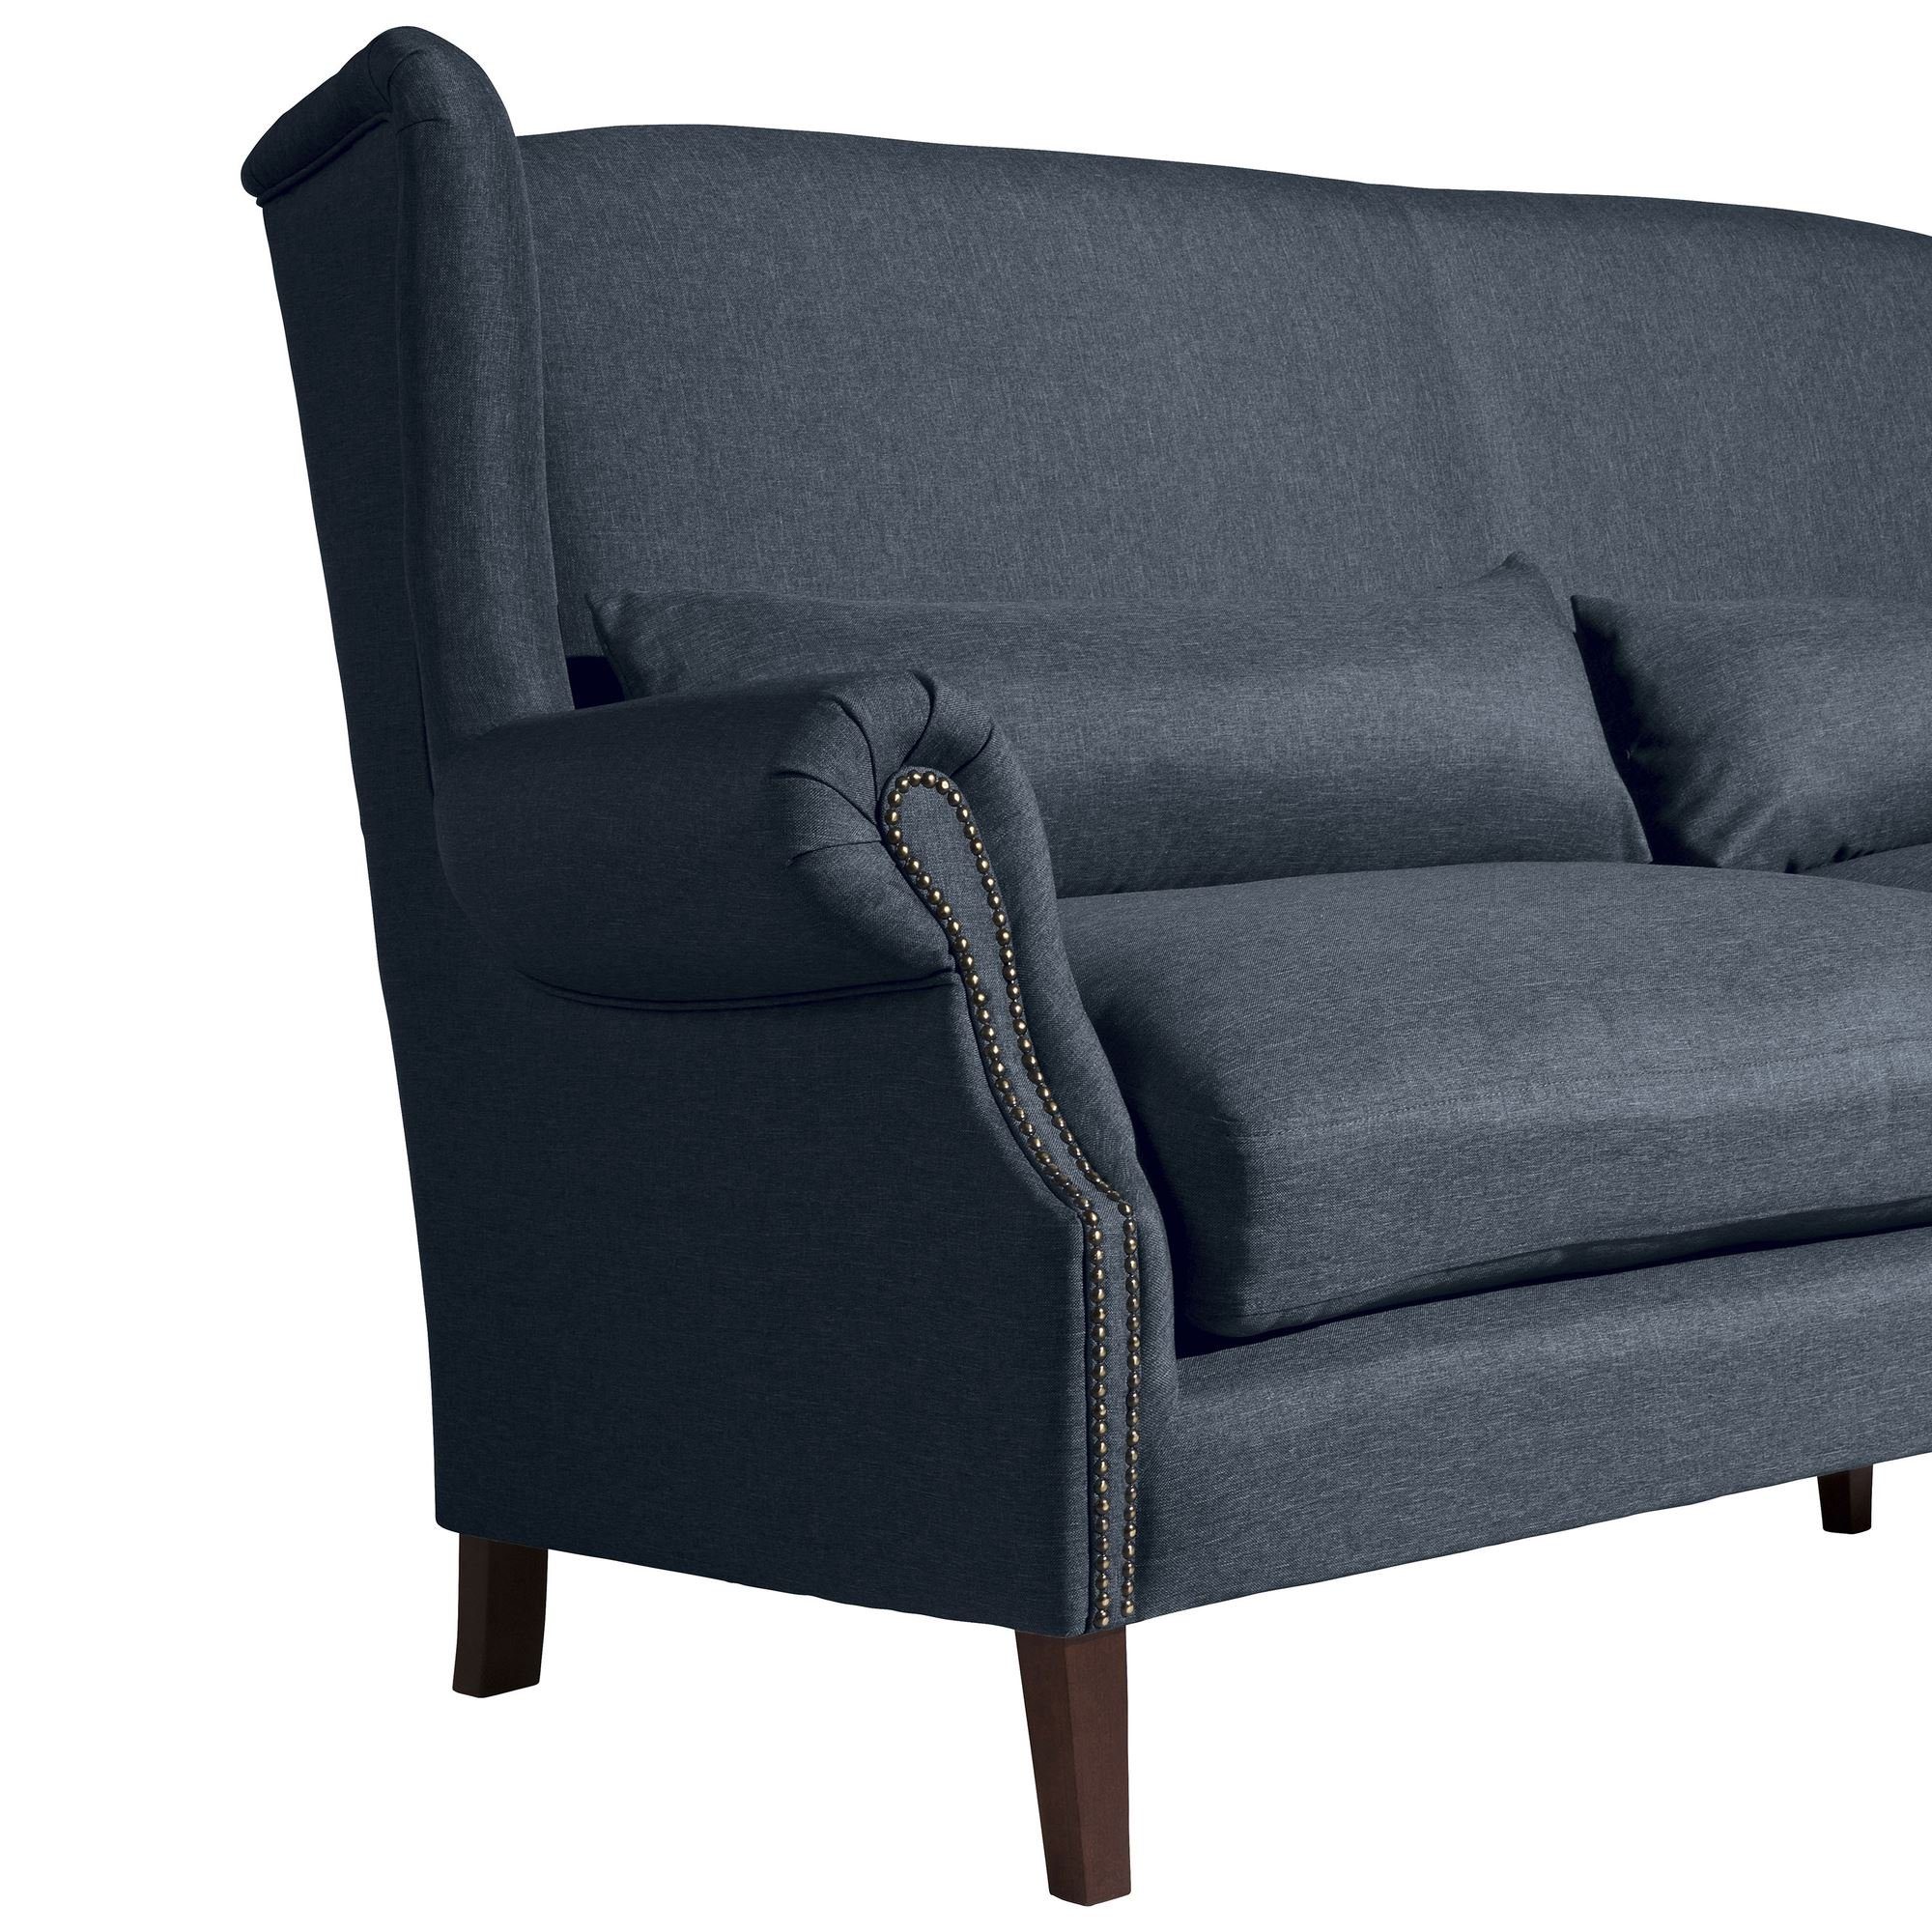 Bezug Sofa 1 Teile, inkl. Kostenlosem aufm 3-Sitzer 58 (2-geteilt) Kandy Sitz Versand Sofa Flachgewebe, Sparpreis hochwertig verarbeitet,bequemer Kessel